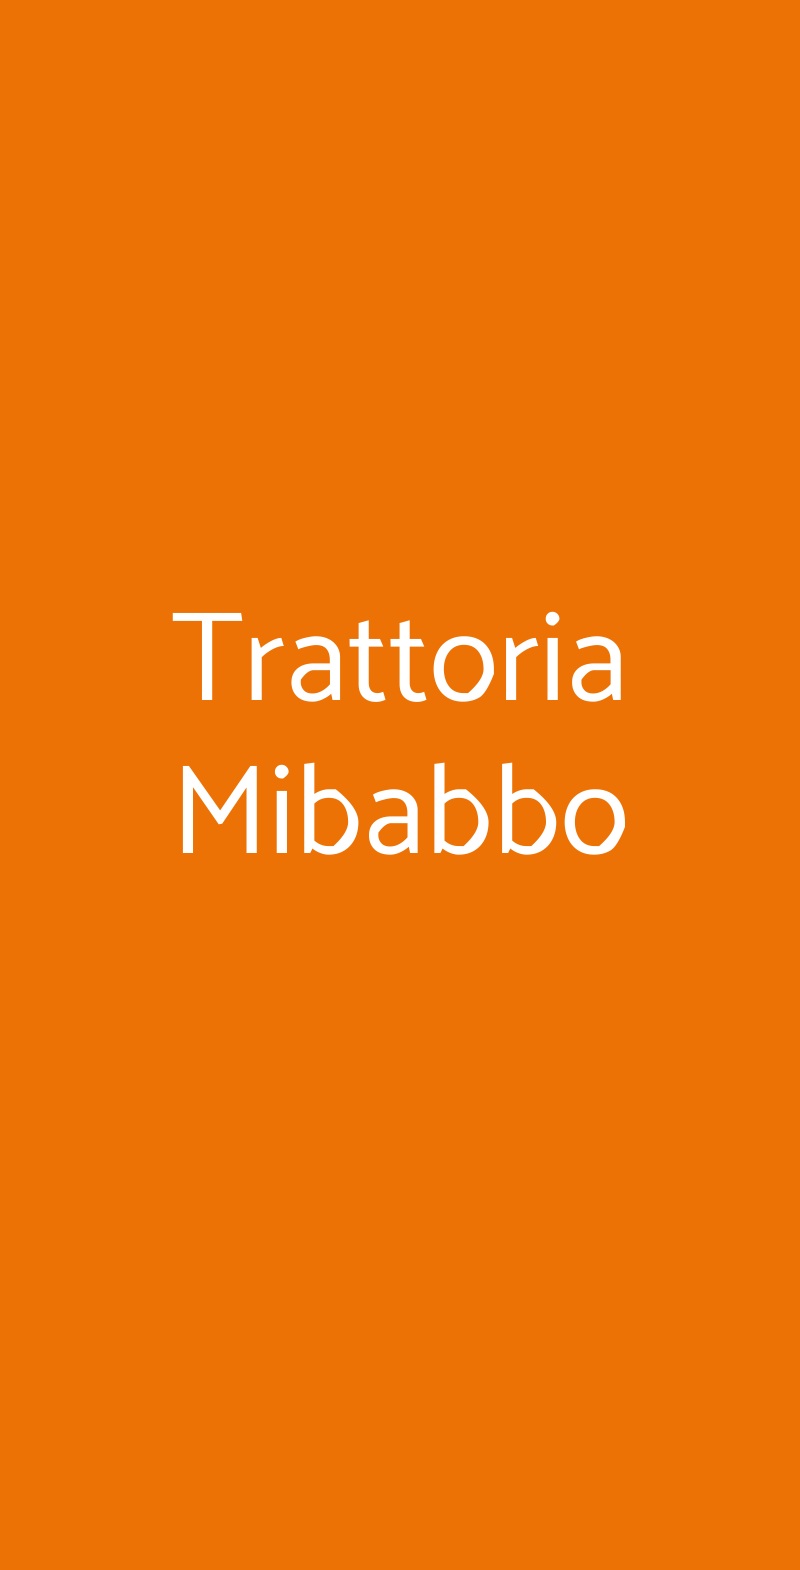 Trattoria Mibabbo Milano menù 1 pagina